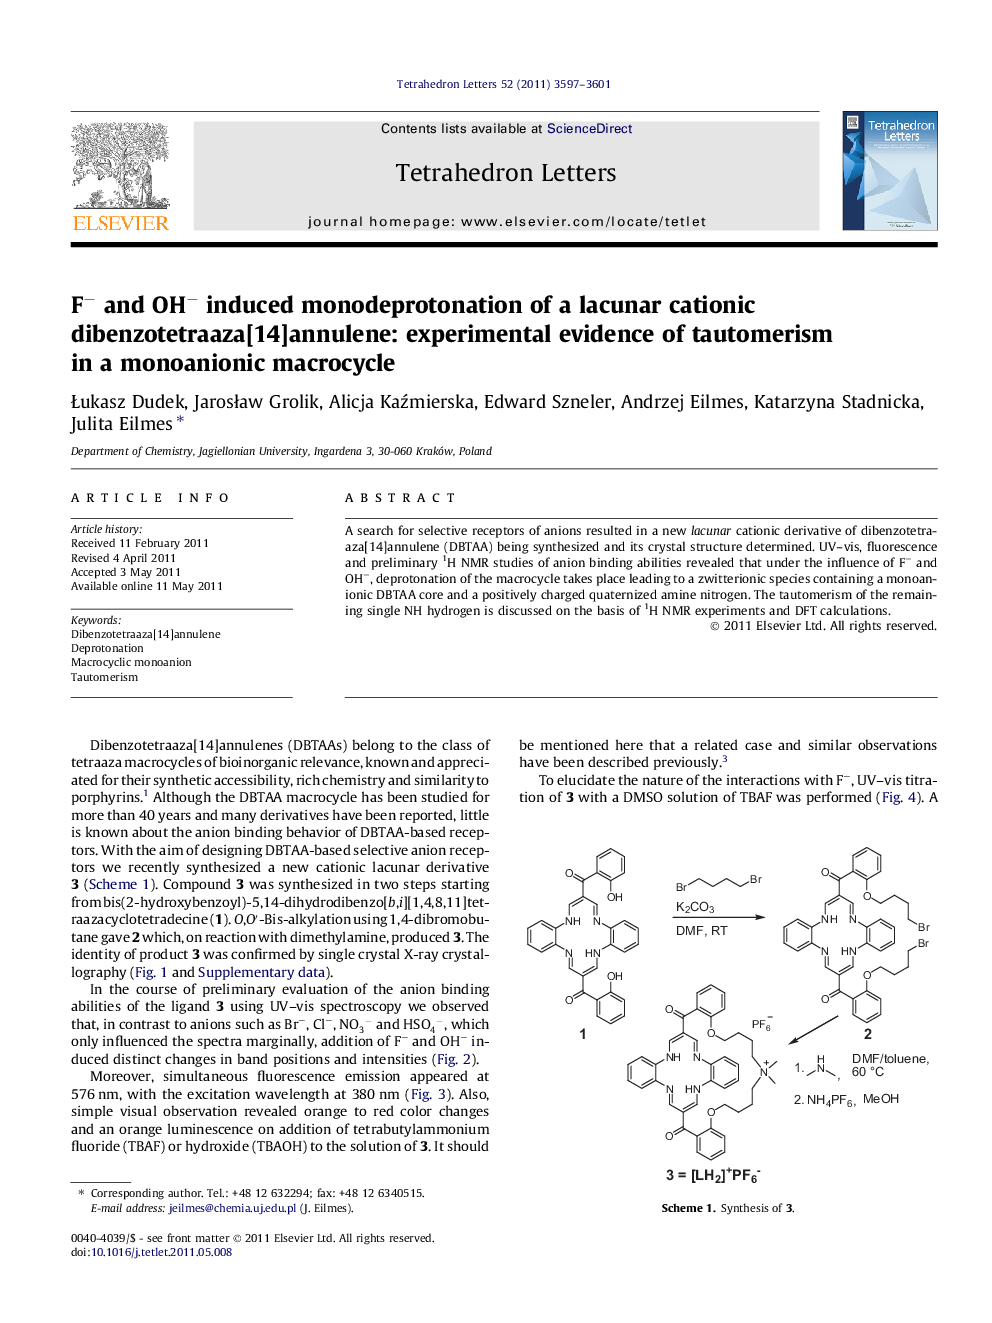 Fâ and OHâ induced monodeprotonation of a lacunar cationic dibenzotetraaza[14]annulene: experimental evidence of tautomerism in a monoanionic macrocycle